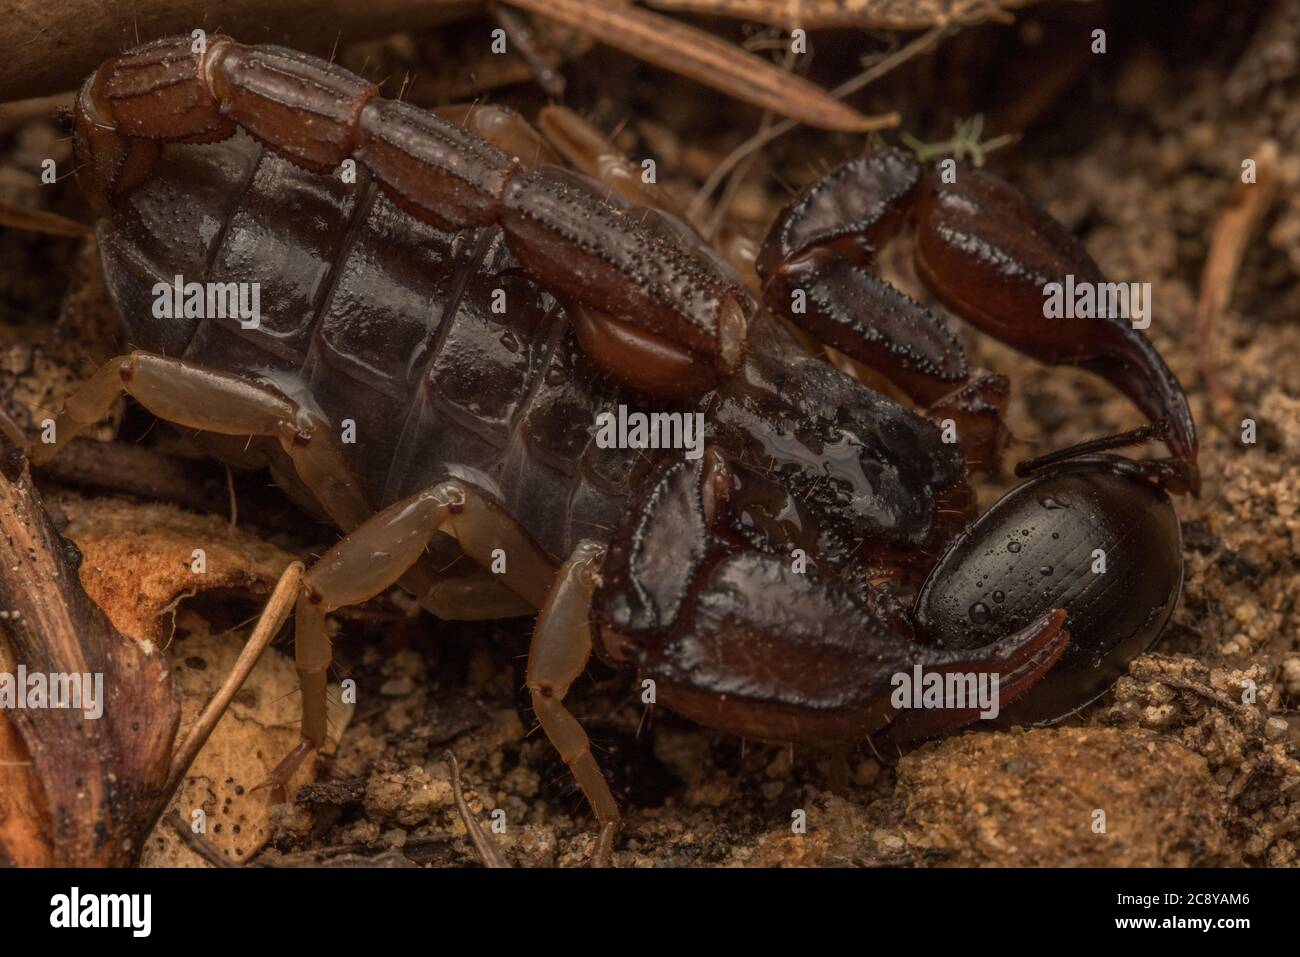 Un scorpion de forêt occidentale (Uroctonus mordax) des montagnes de Santa Cruz en Californie, il mange un coléoptère. Banque D'Images